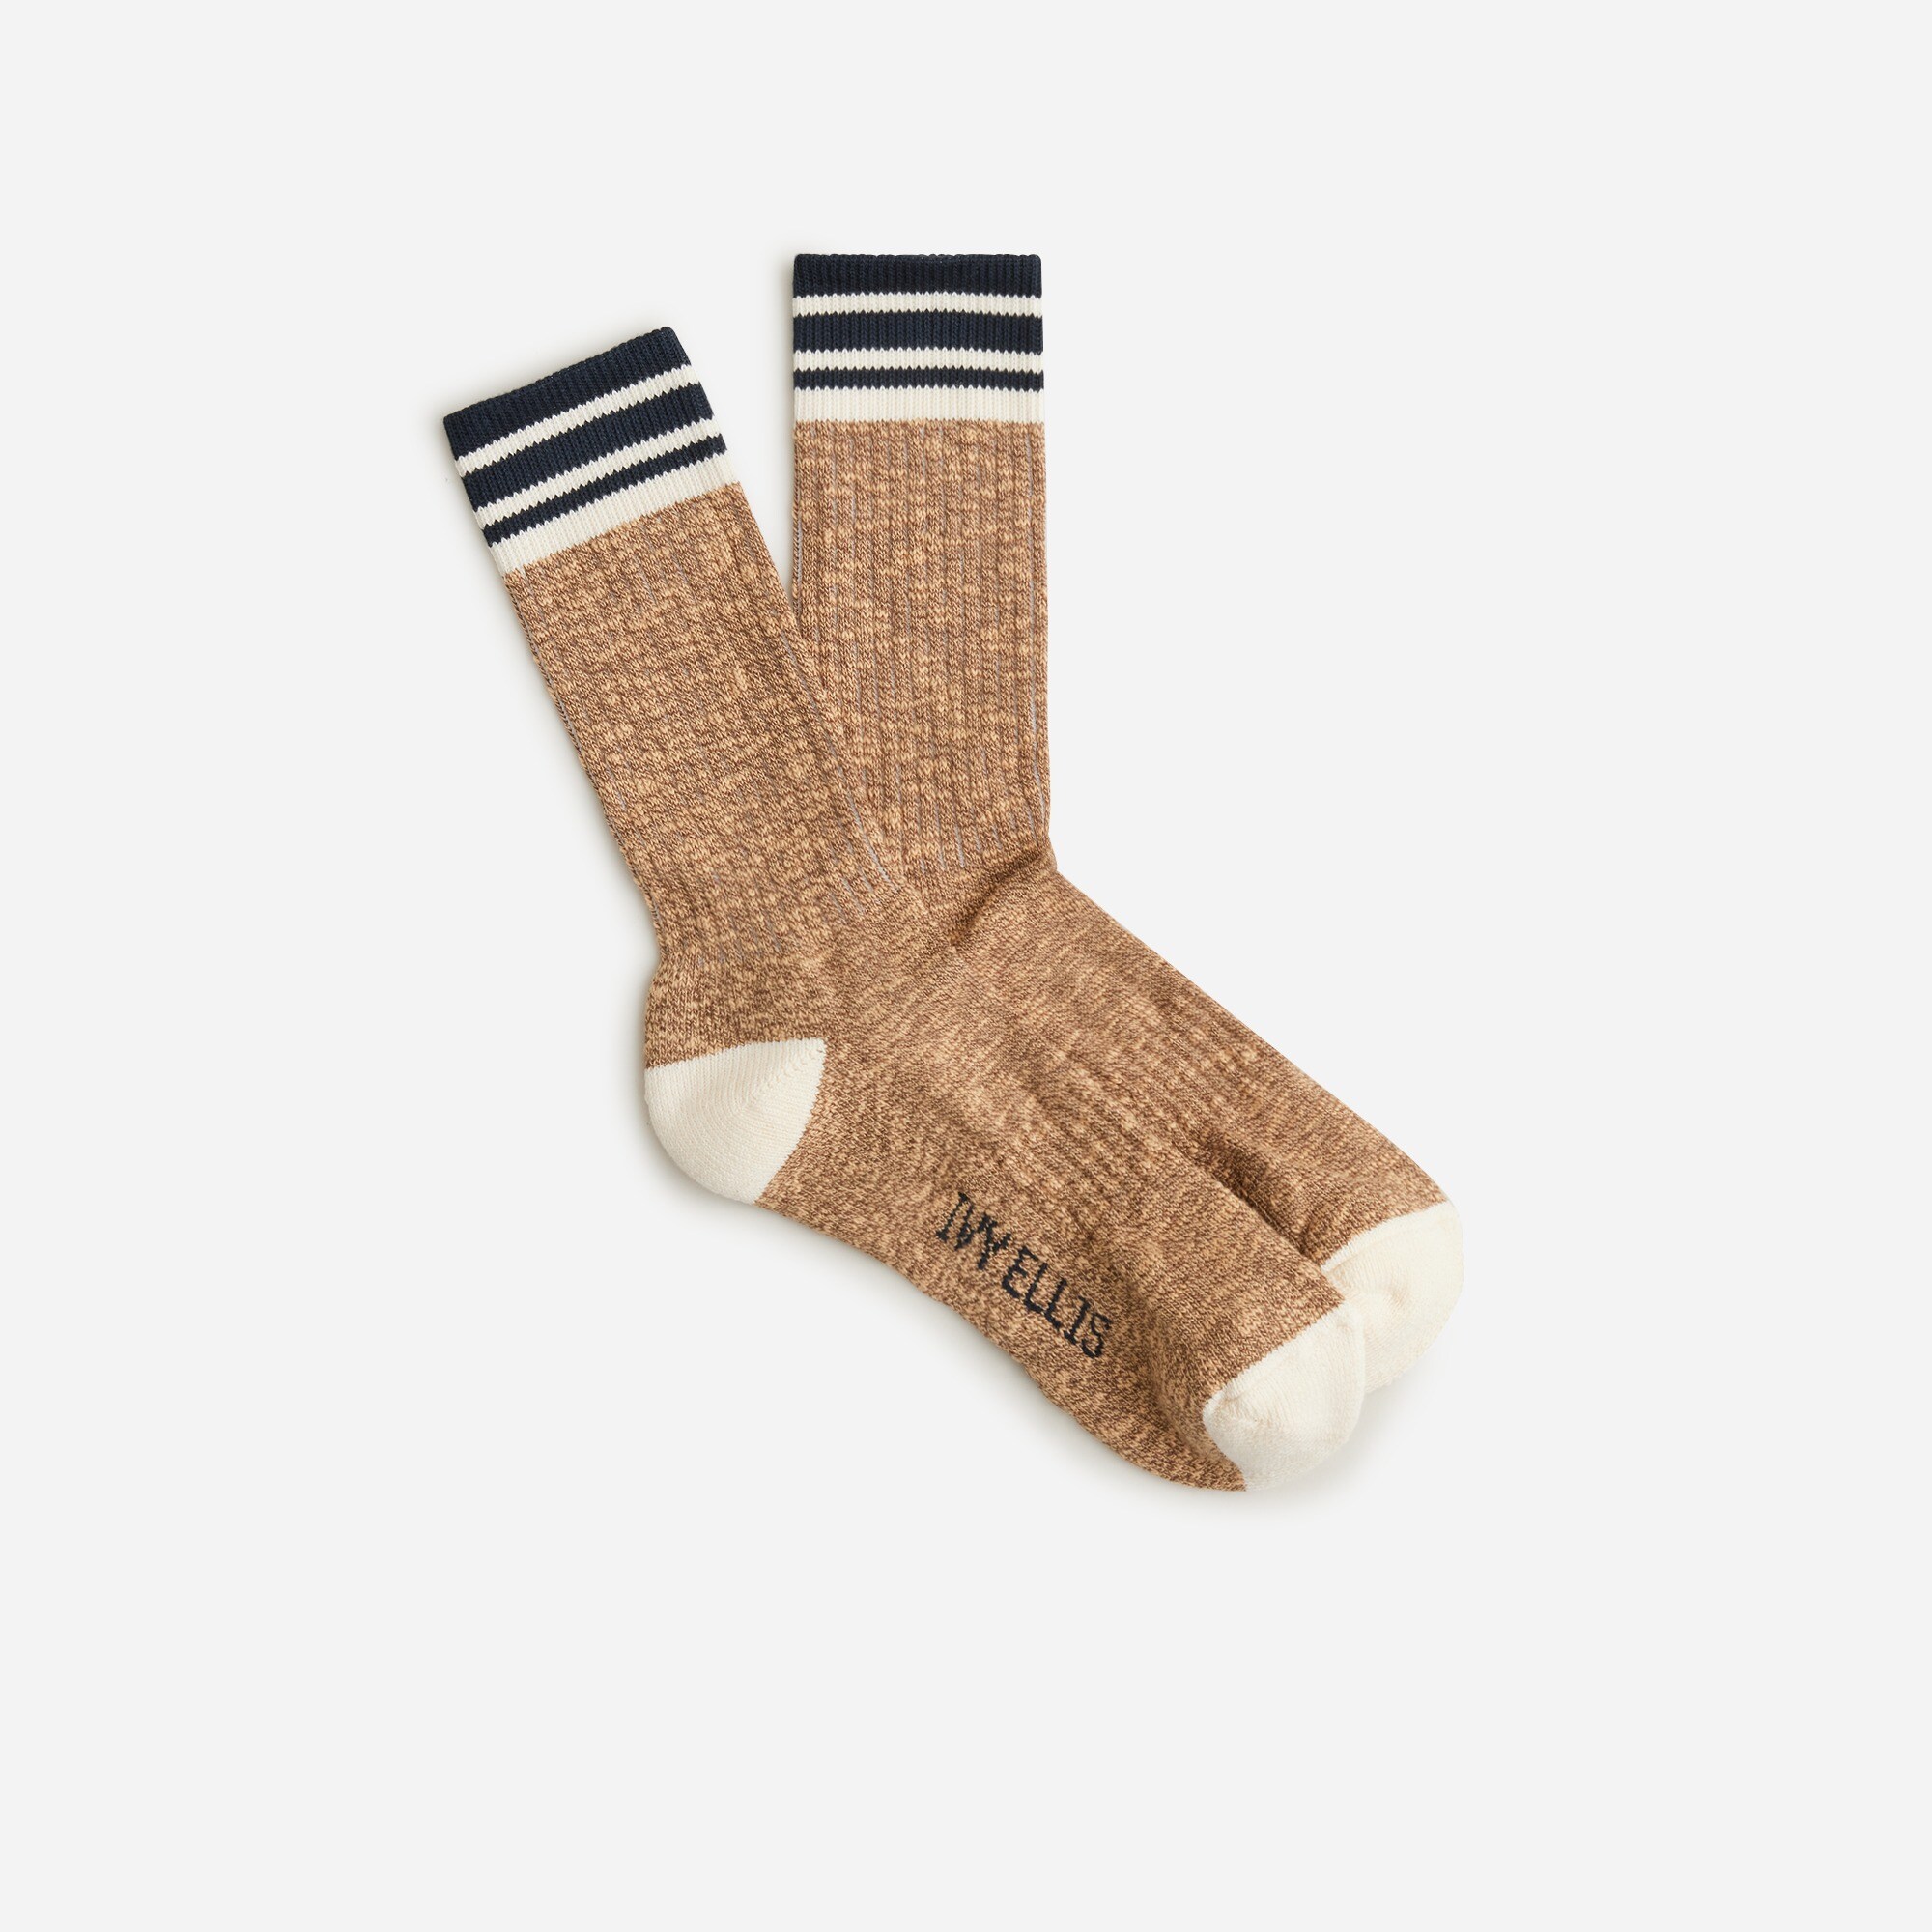  Ivy Ellis Sandwood socks in slub cotton